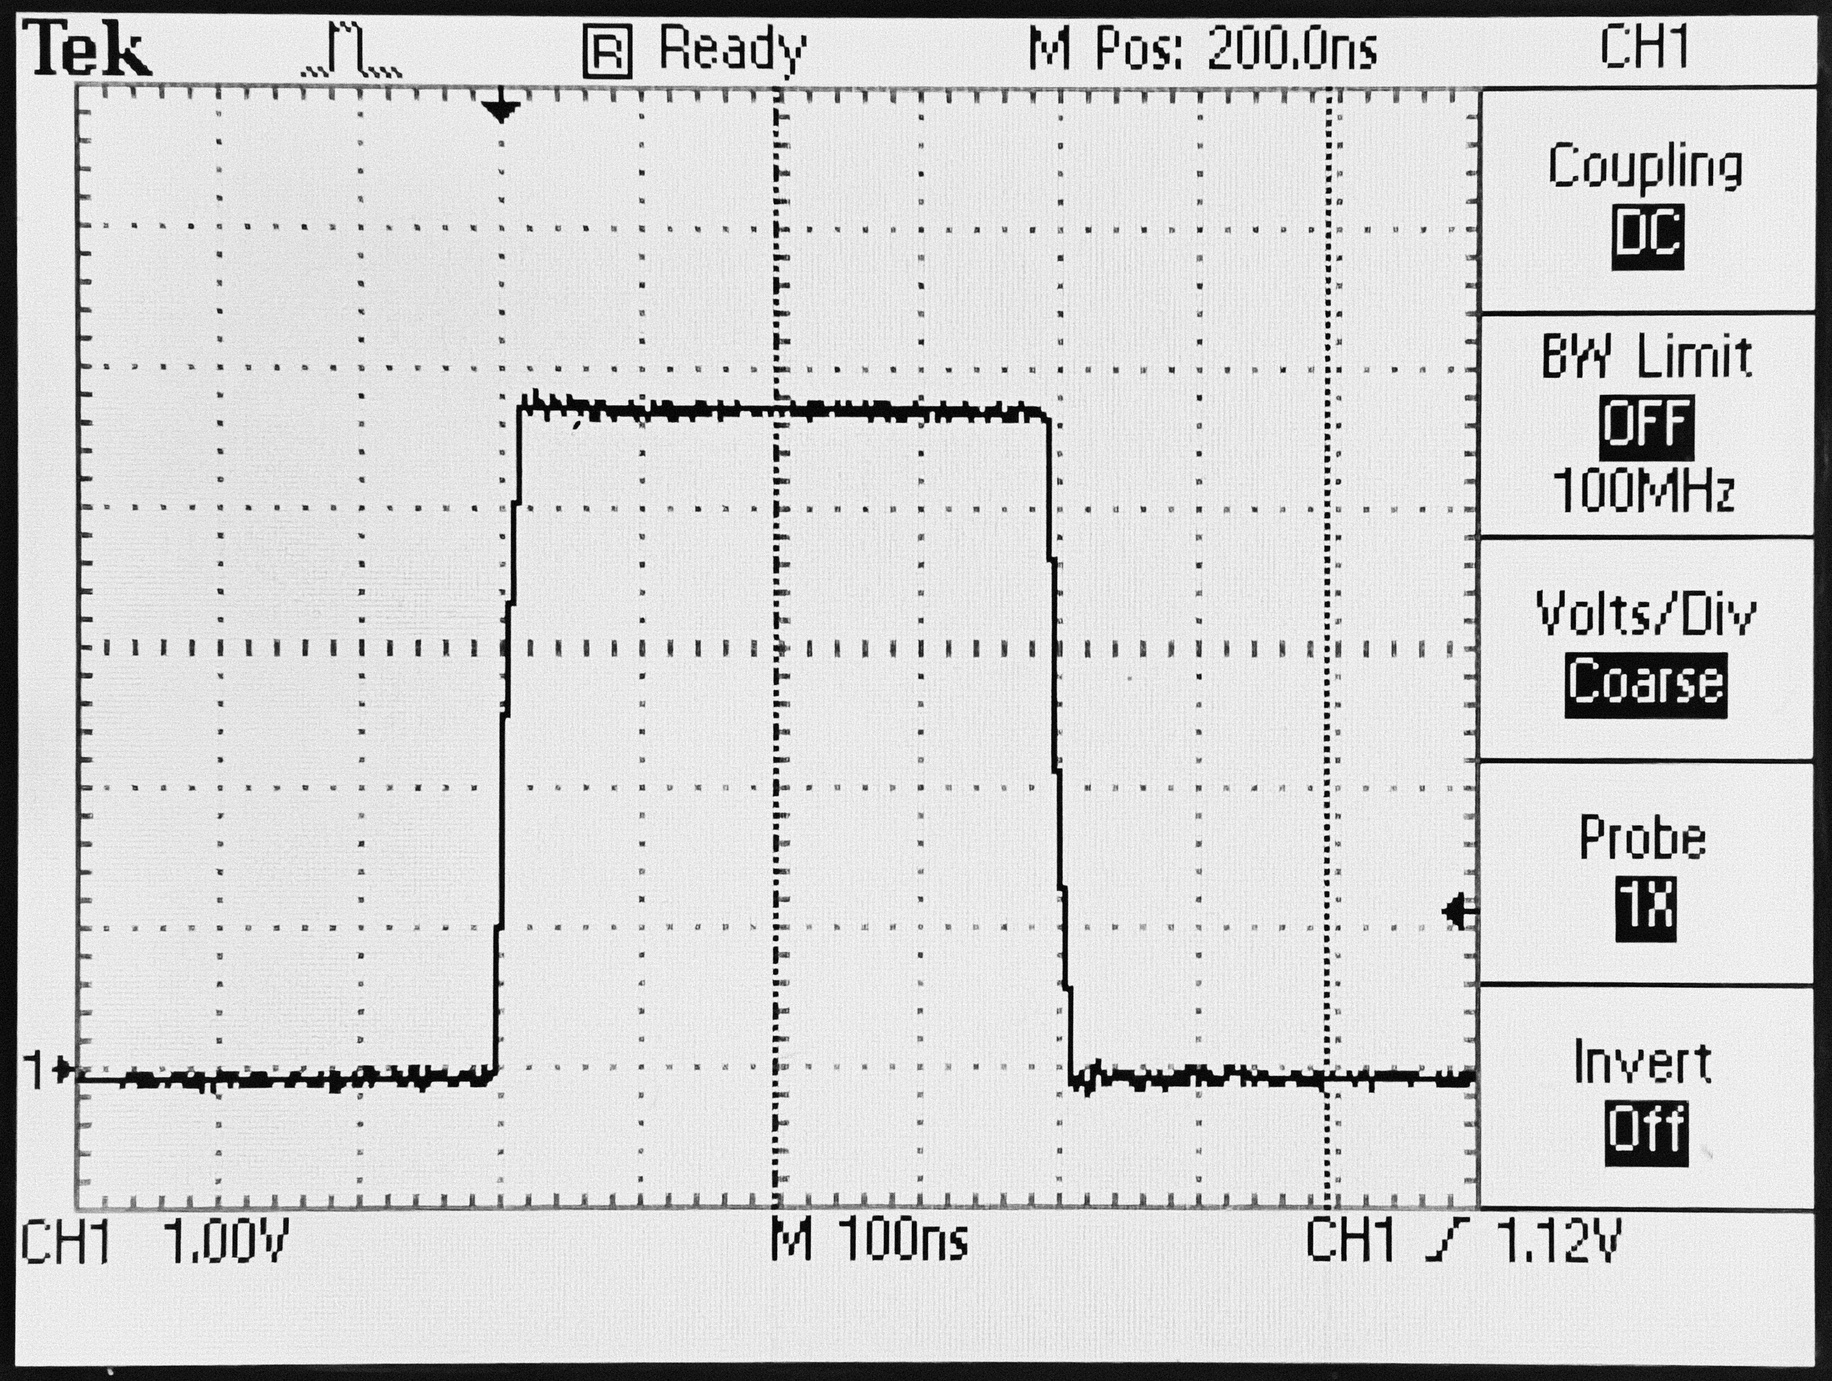 5V 1PPS pulse from SA.22c oscillator